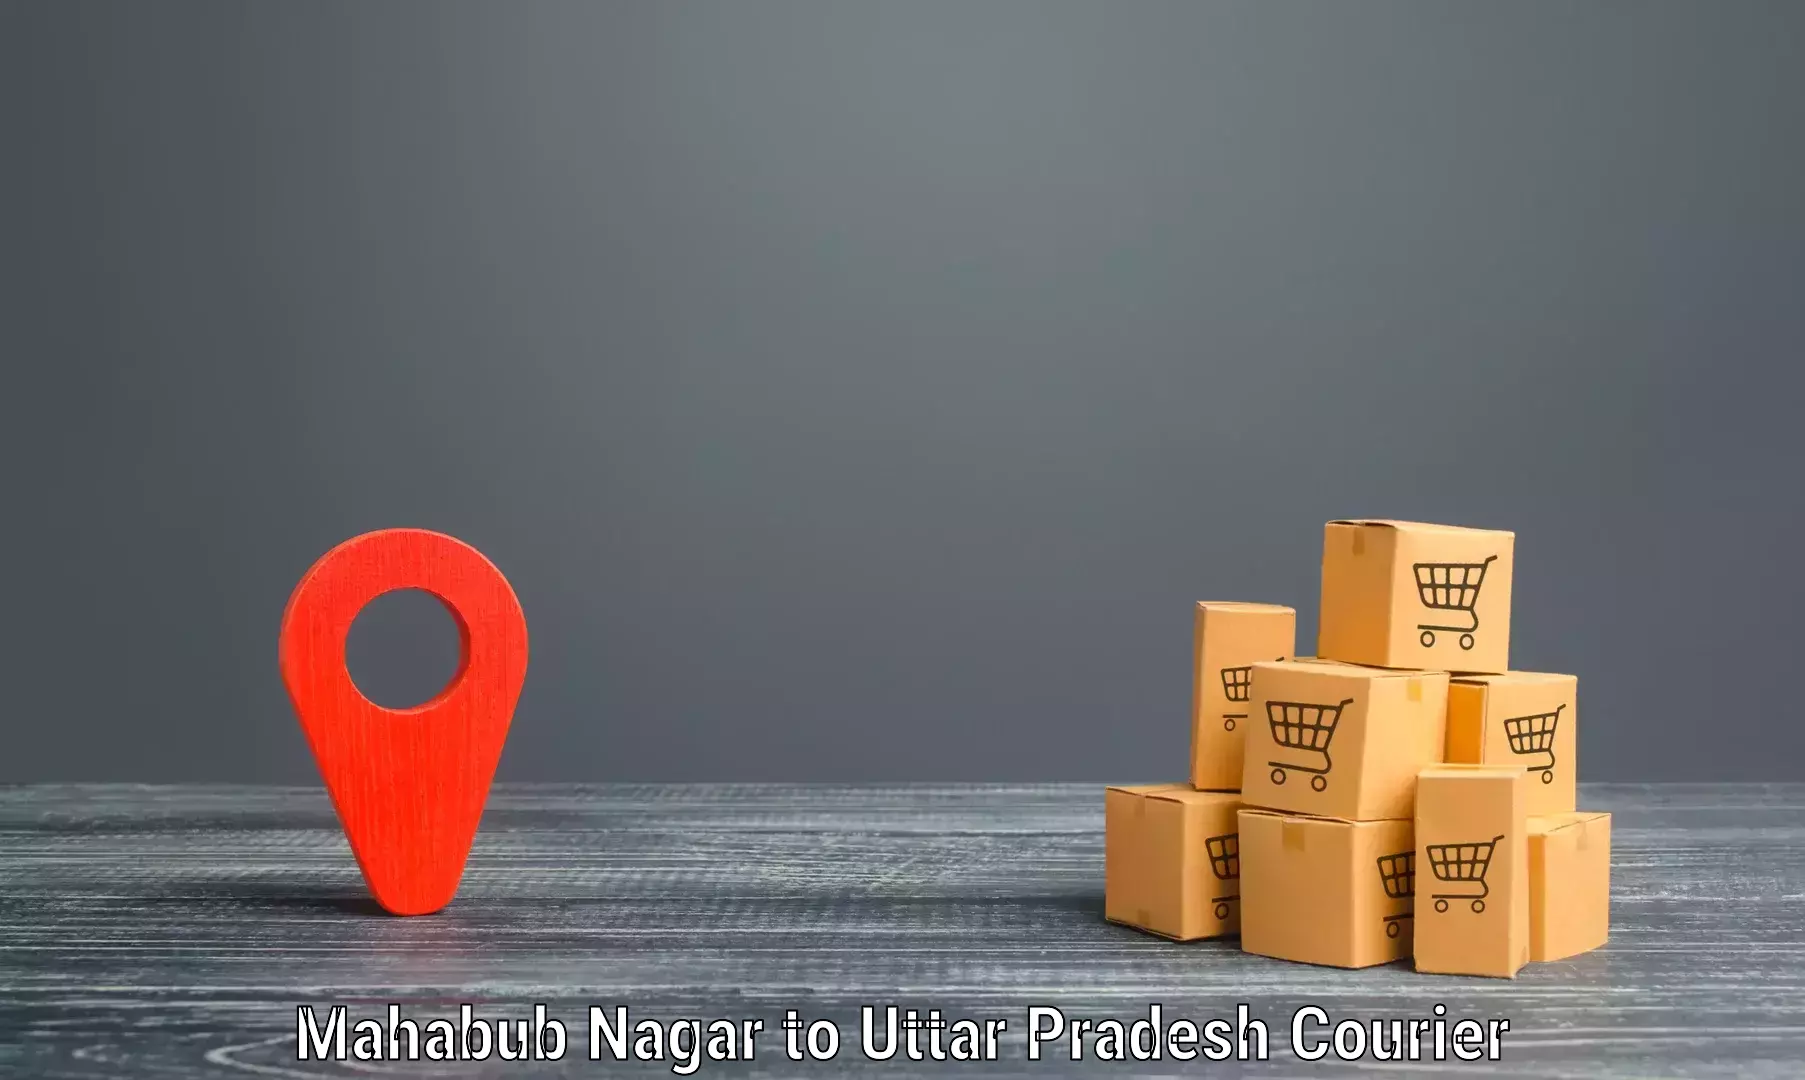 Customer-centric shipping Mahabub Nagar to Sahatwar